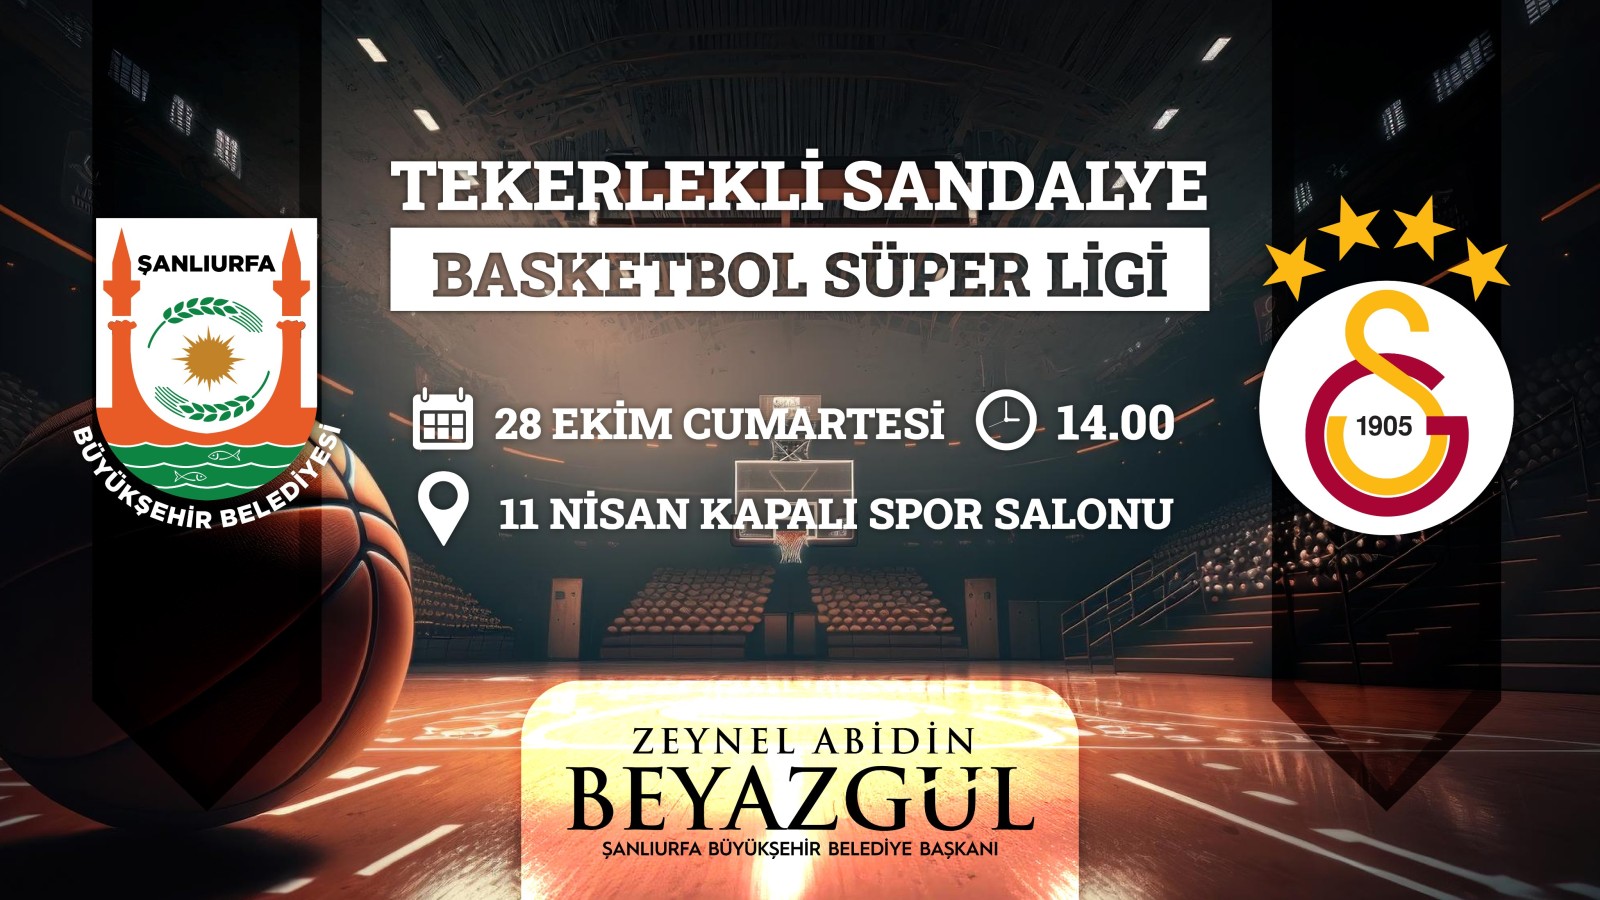 Şanlıurfa Tekerlekli sandalye Basketbol takımı Galatasaray'ı konuk ediyor